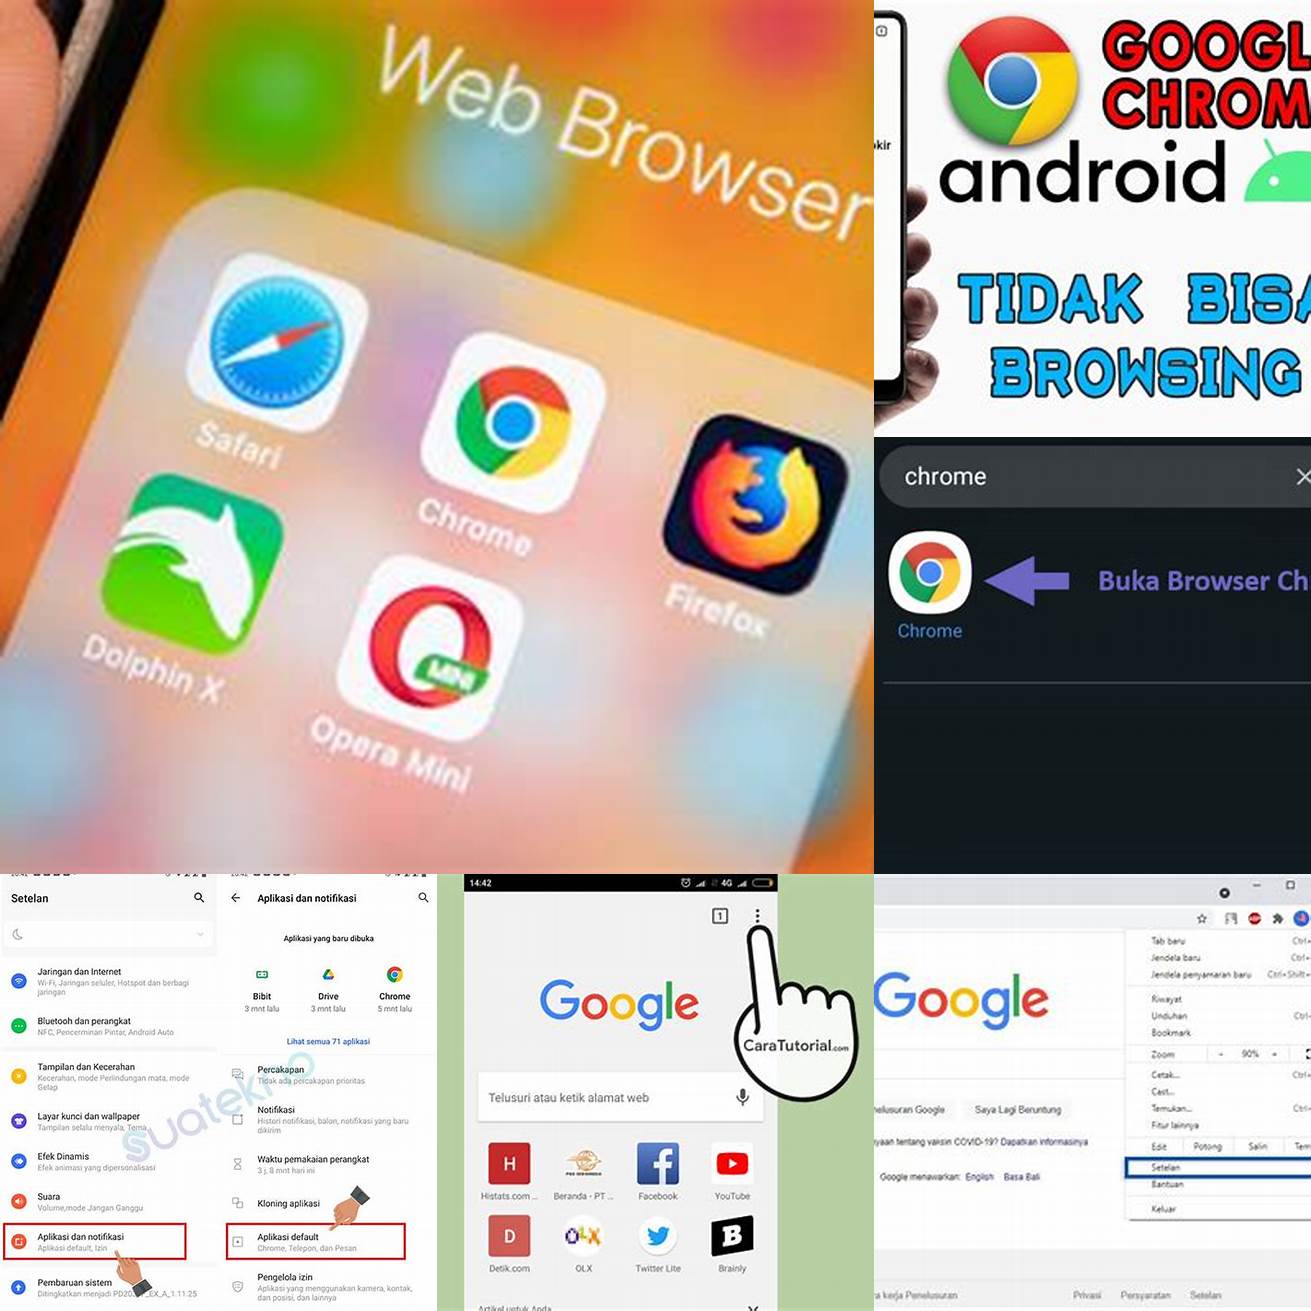 Buka browser di smartphone Anda